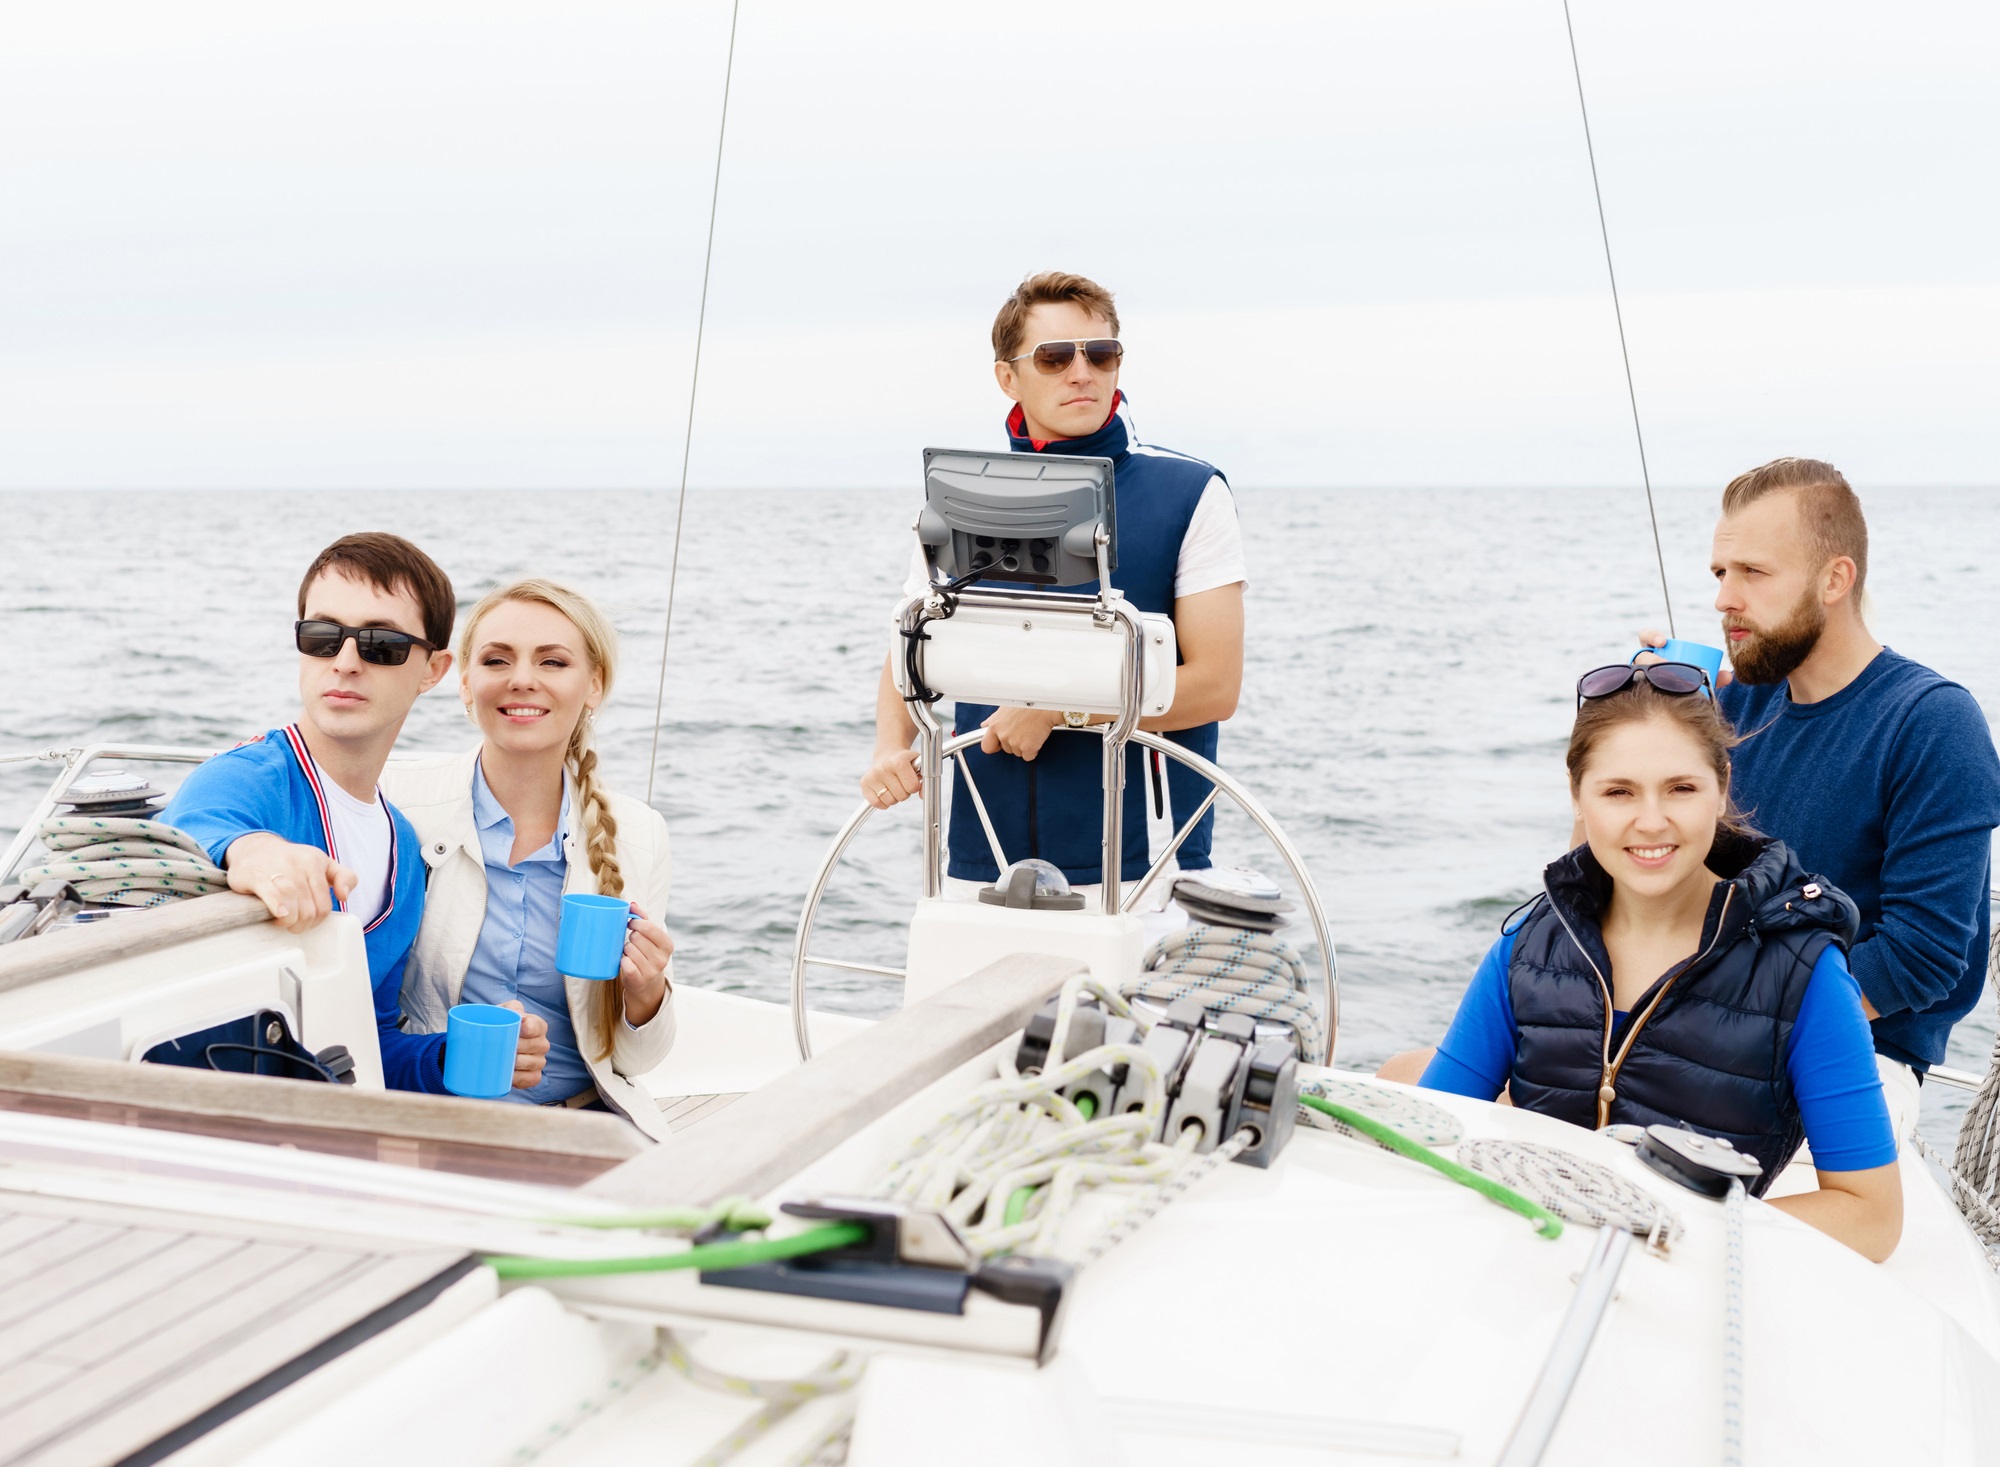 betriebsausflug-segeln-teambuilding-ablauf-moeglichkeiten-tipps